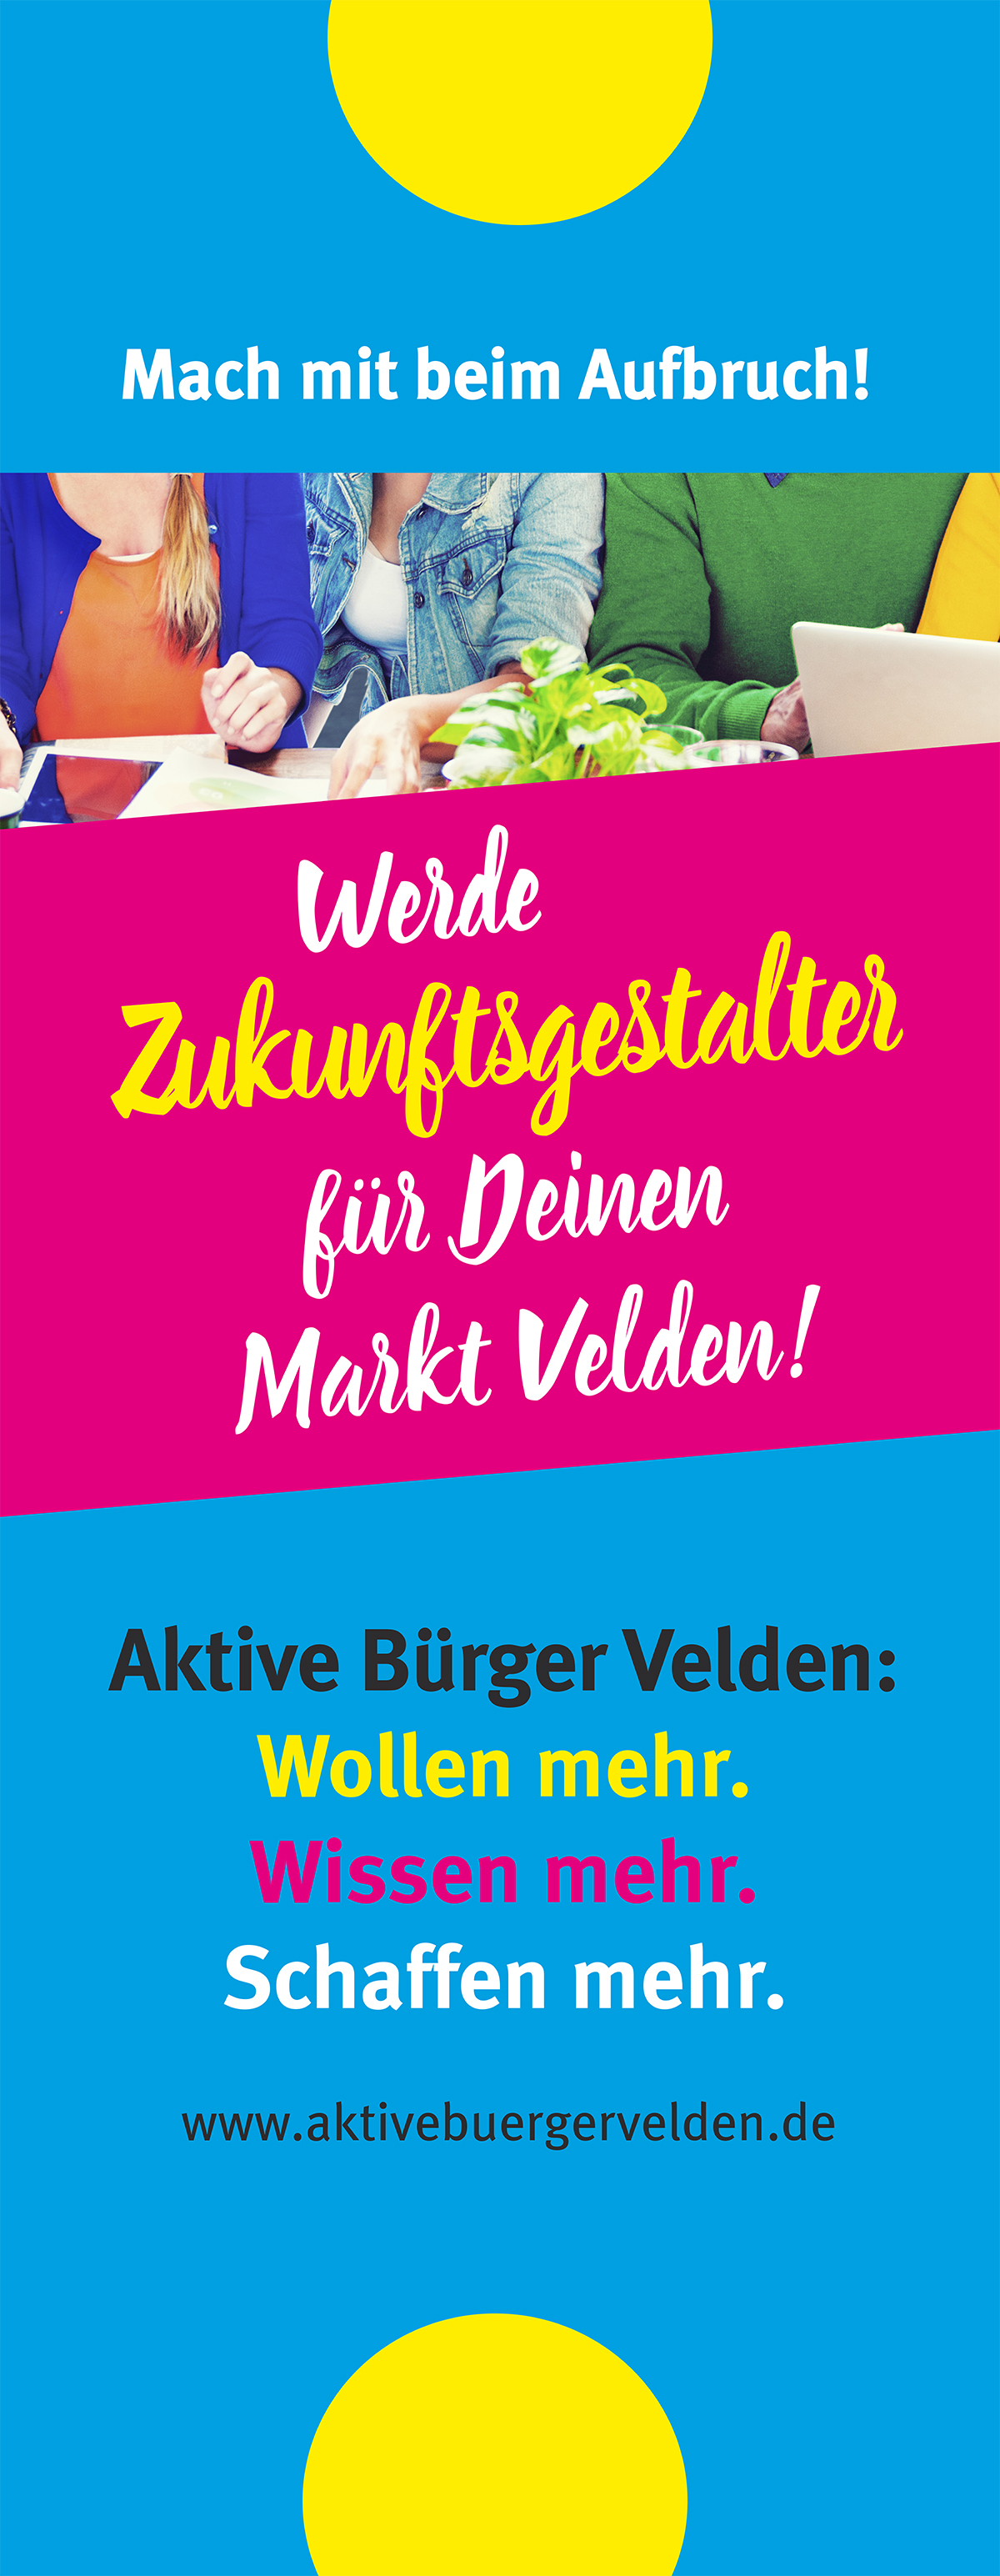 Werbung für "Aktive Bürger Velden"